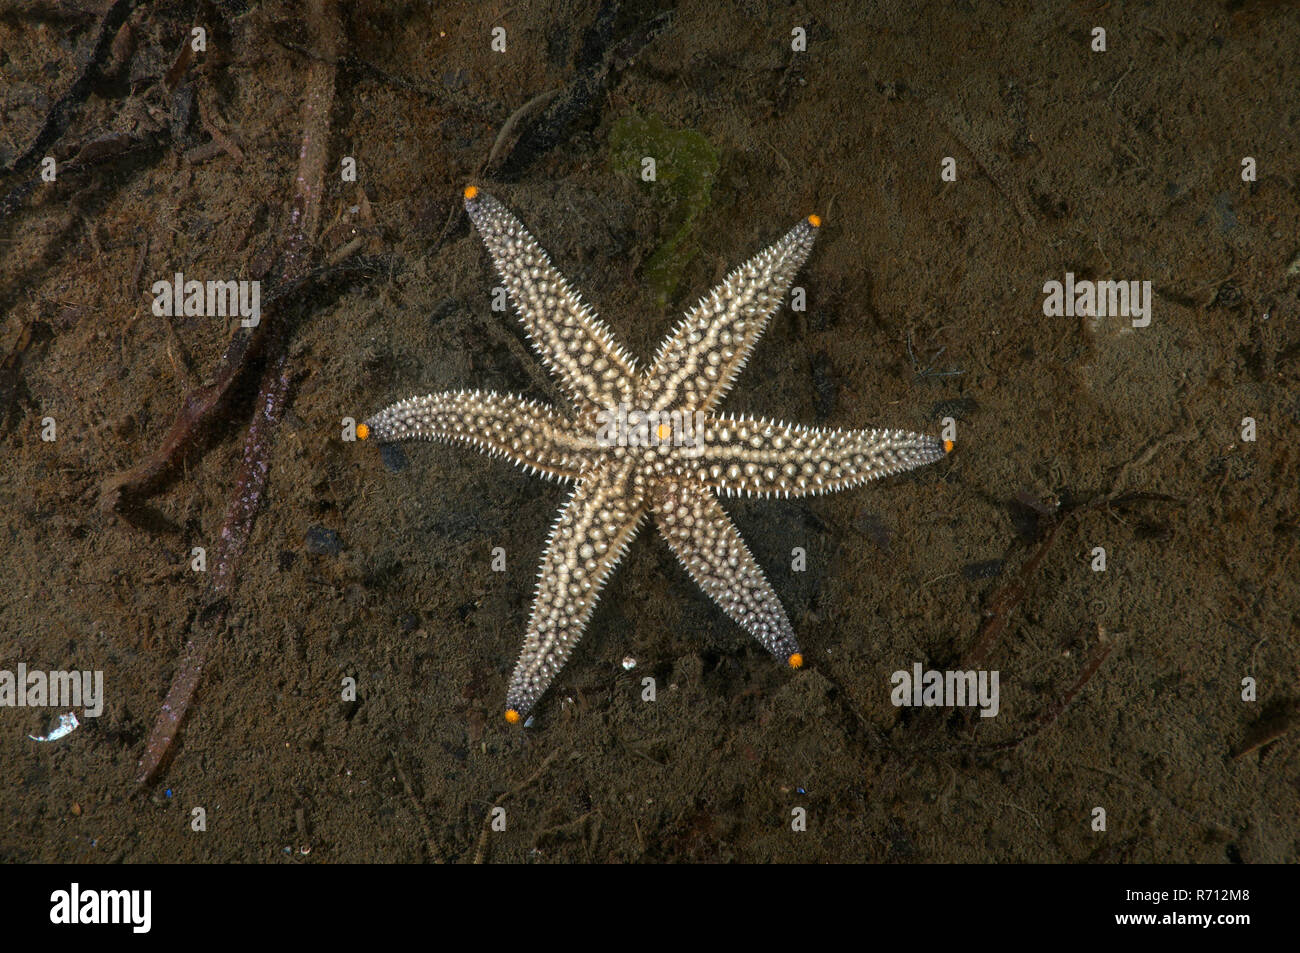 La mutazione genetica, stelle marine (Distolasterias nipon) con sei raggi-invece di cinque raggi, Mare del Giappone, Primorsky Krai Foto Stock